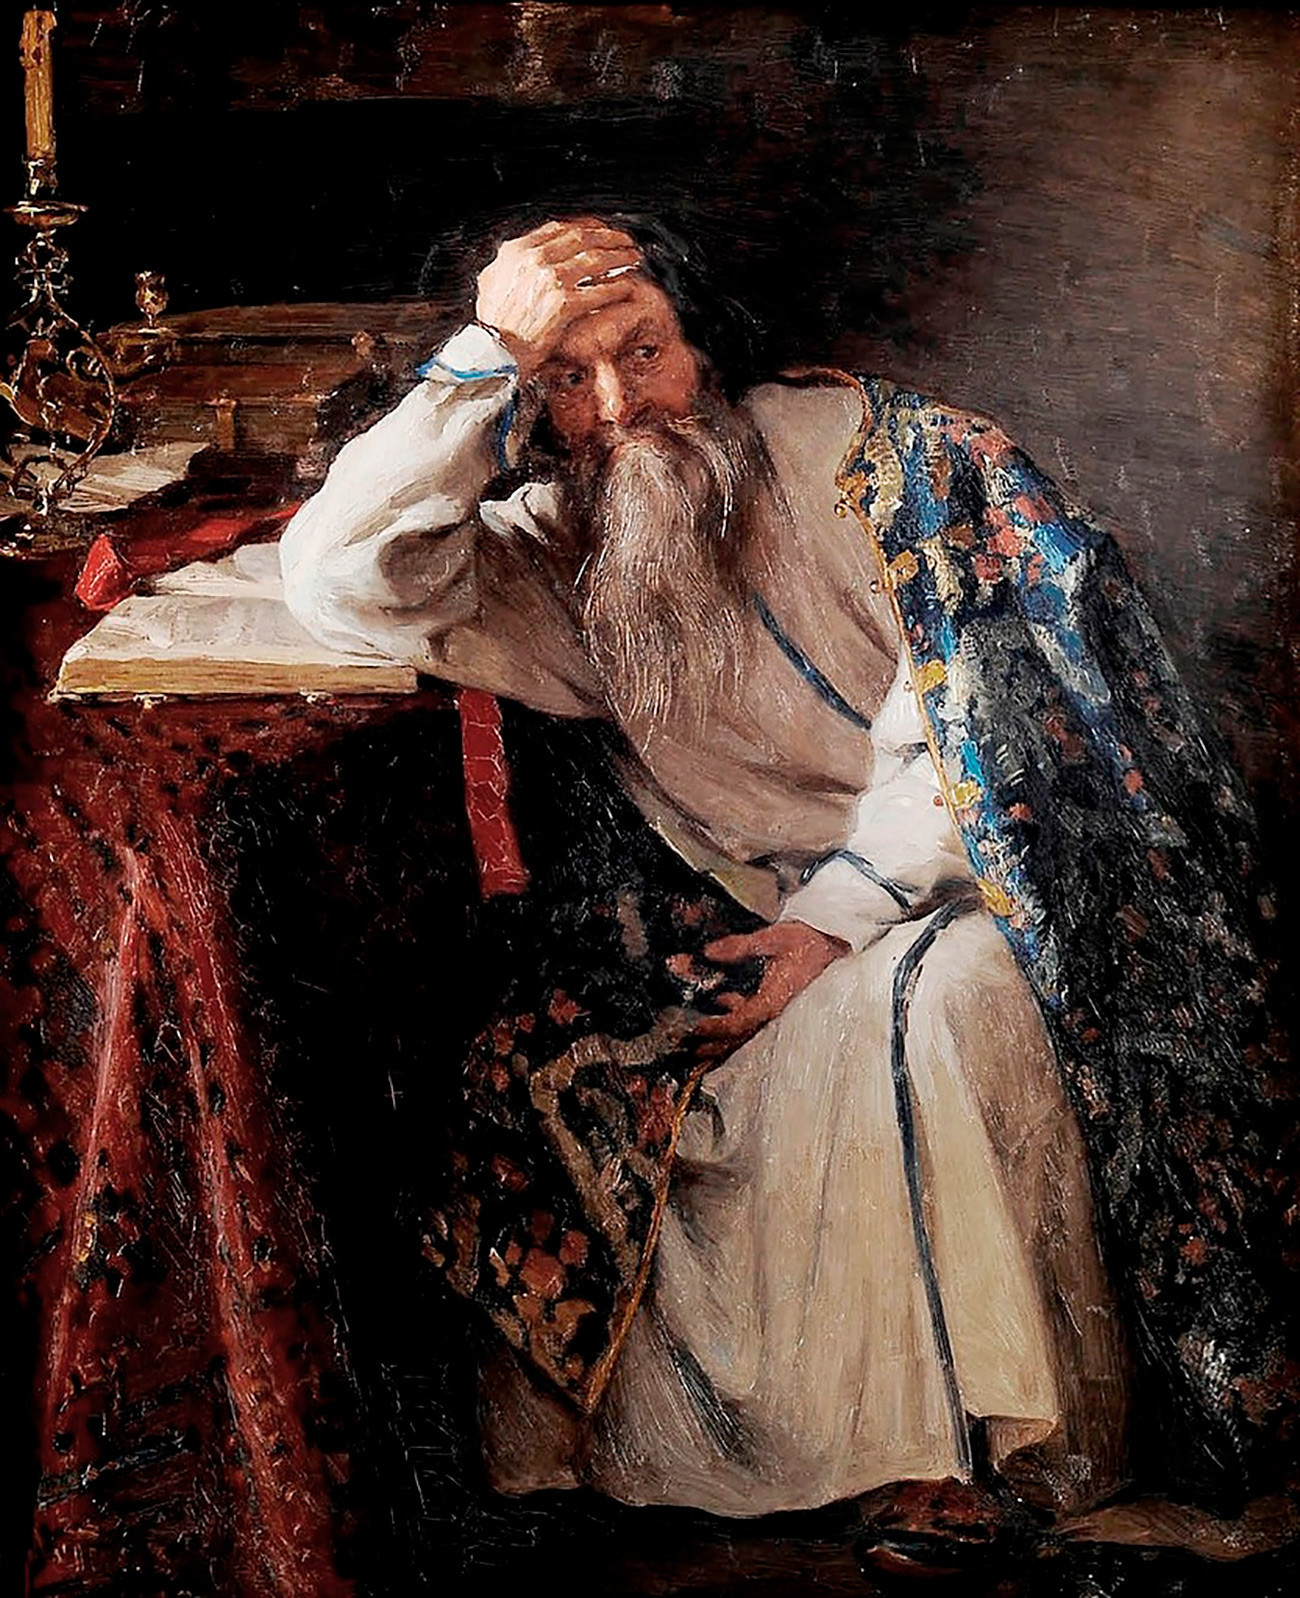 Ivan yang Mengerikan, karya Klavdiy Lebedev, 1916.